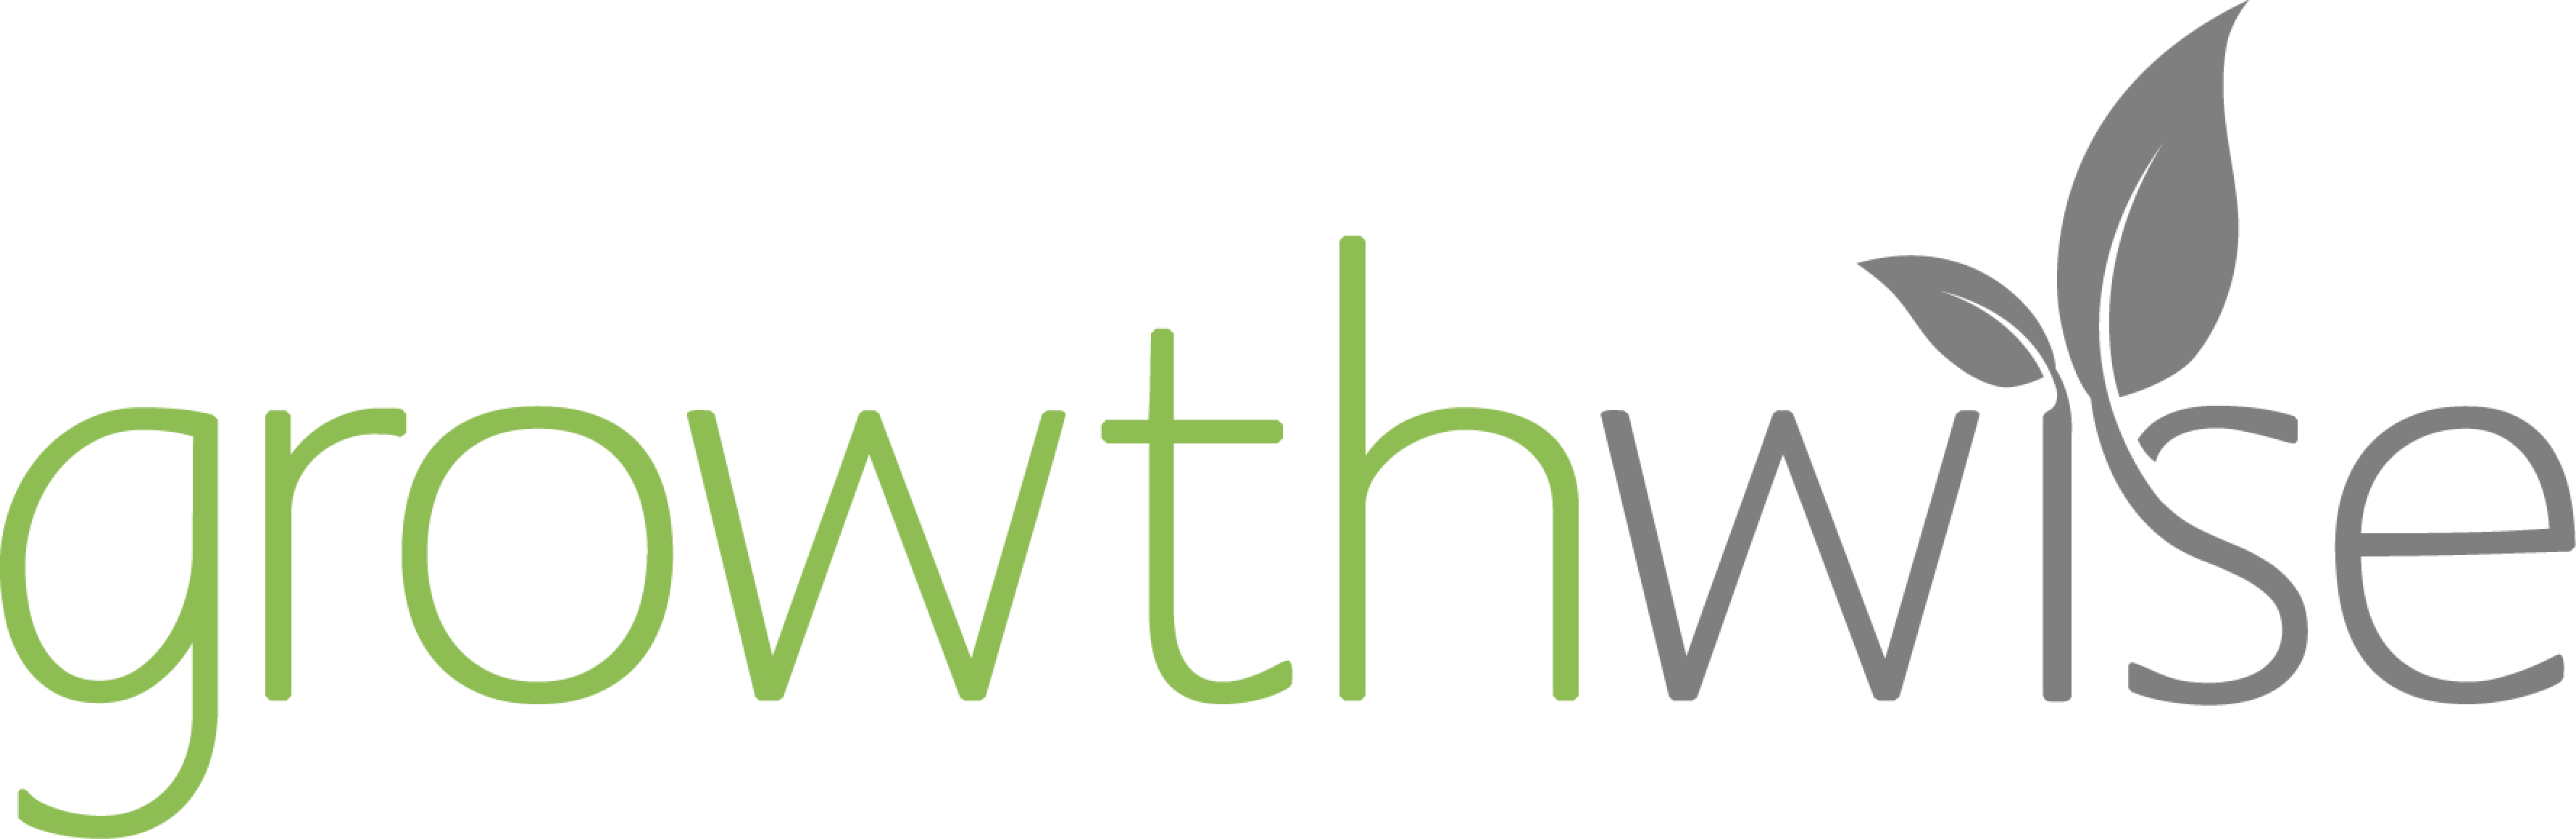 logo - Growthwise (white